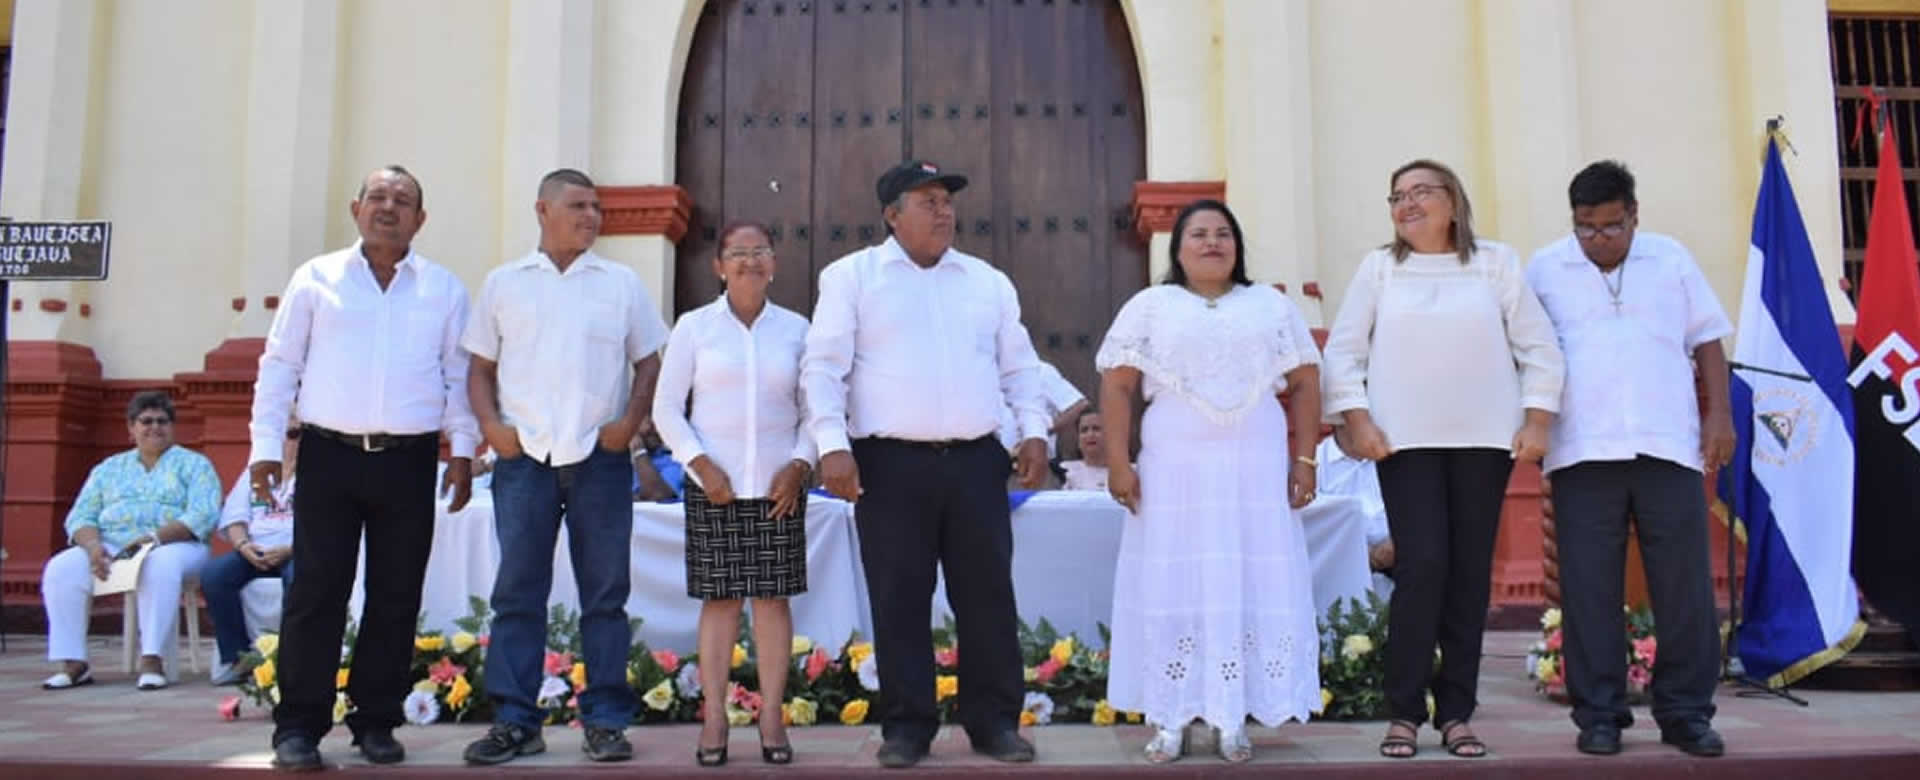 Juramentan a nuevos directos indígenas en Sutiaba, León